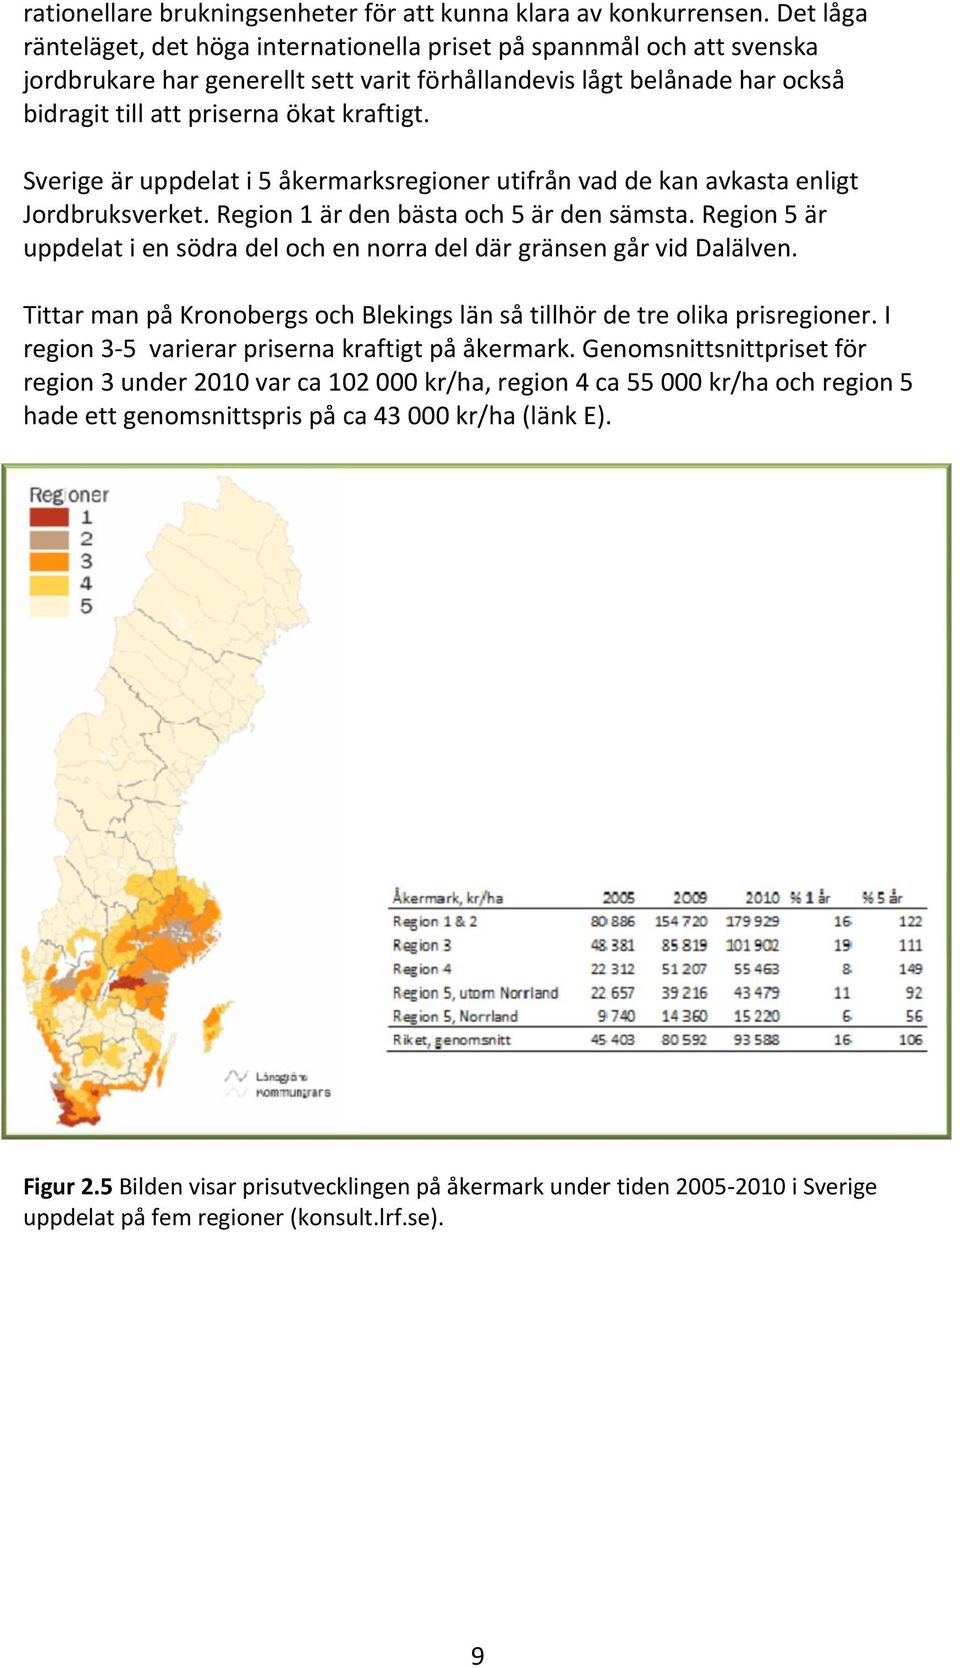 Sverige är uppdelat i 5 åkermarksregioner utifrån vad de kan avkasta enligt Jordbruksverket. Region 1 är den bästa och 5 är den sämsta.